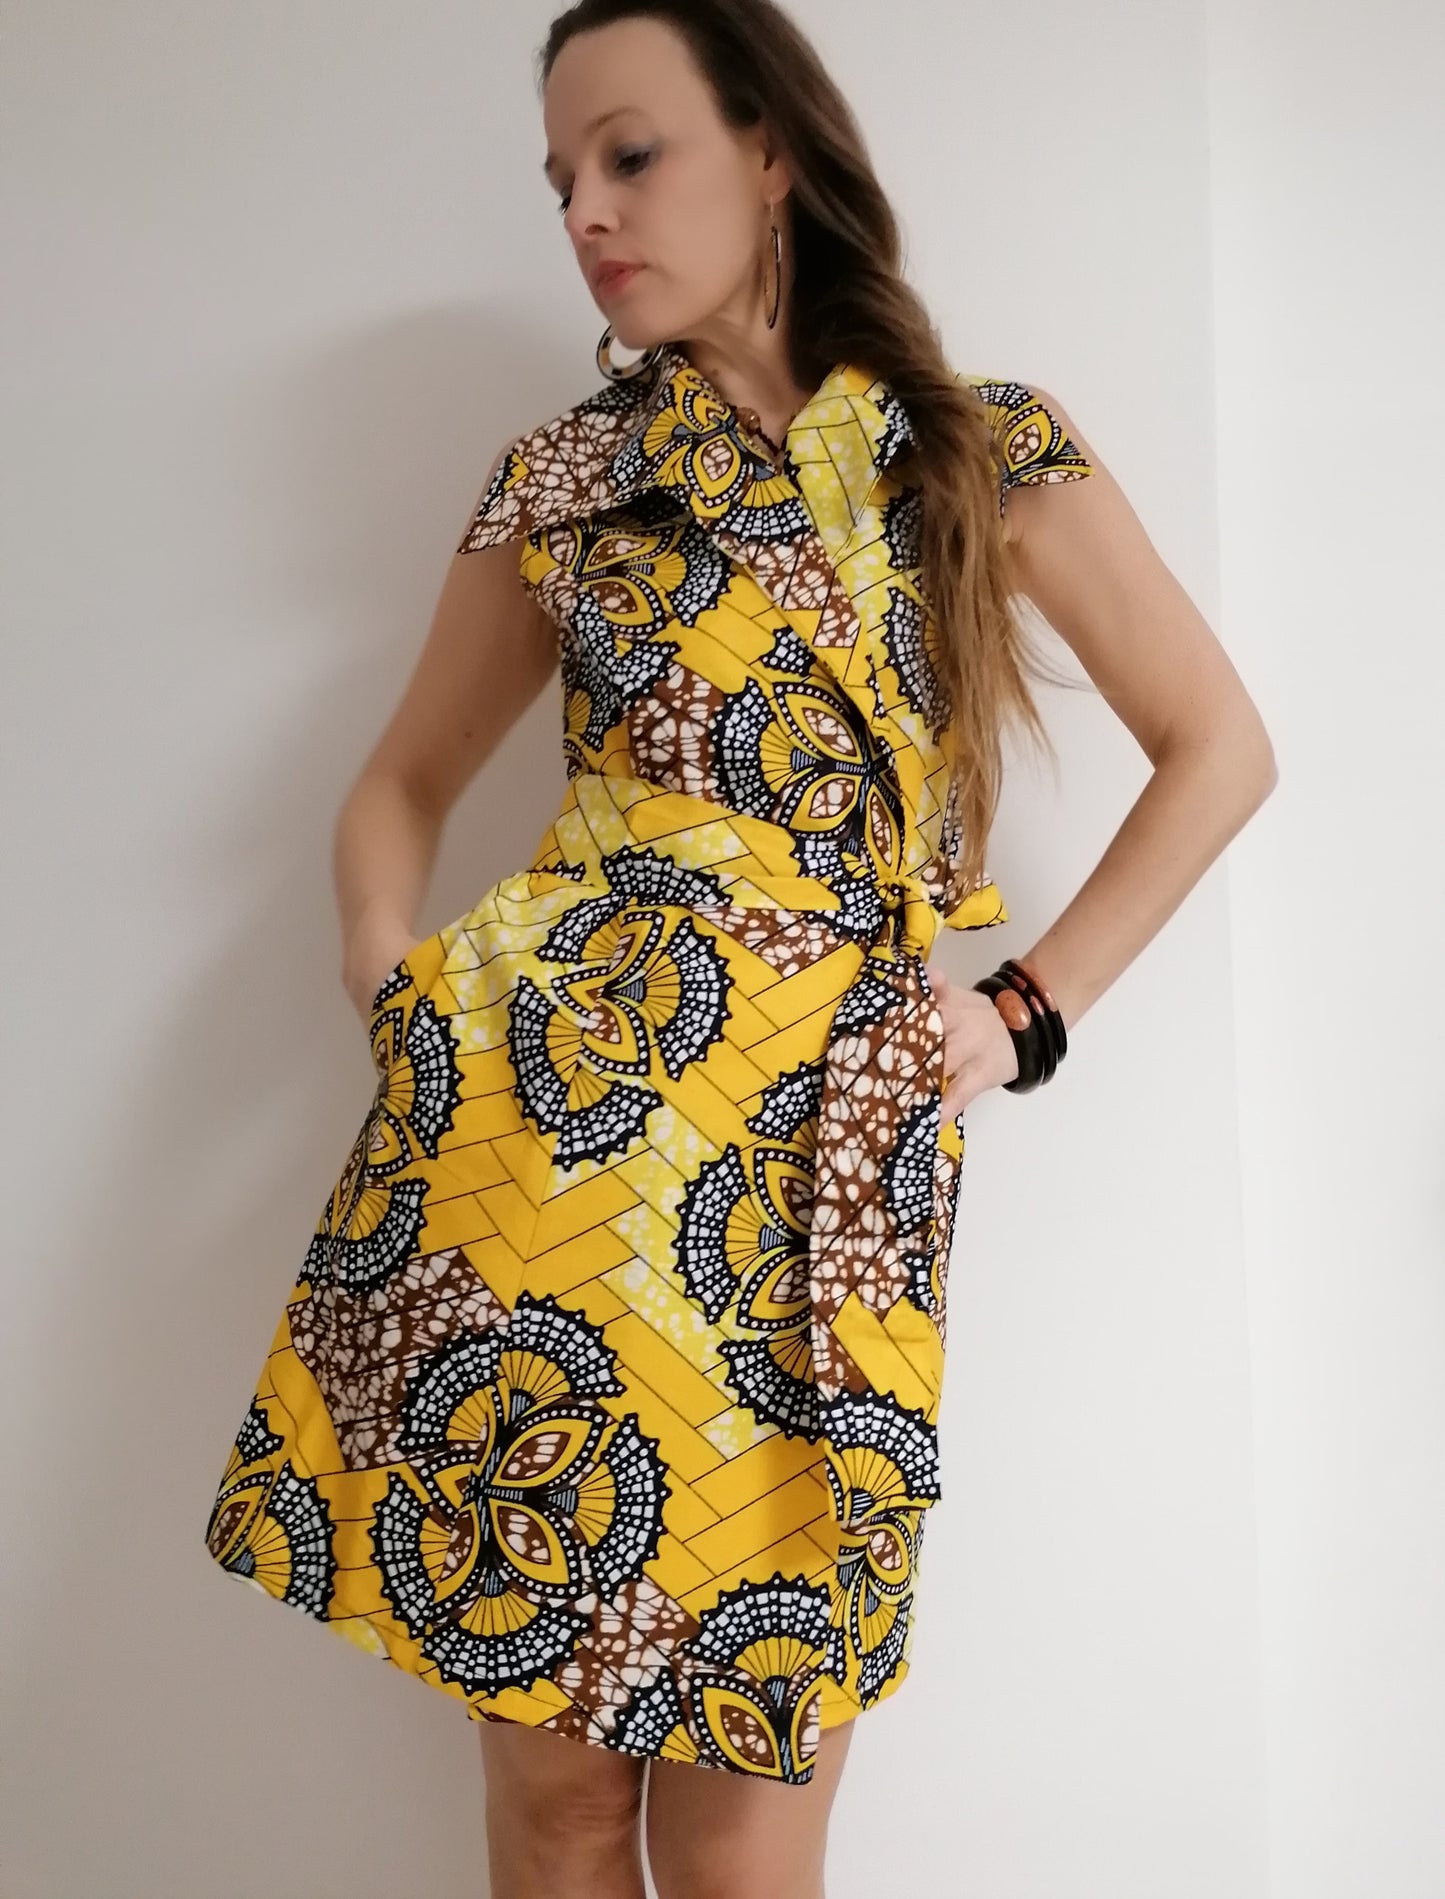 Africké šaty žluté / African dress yellow